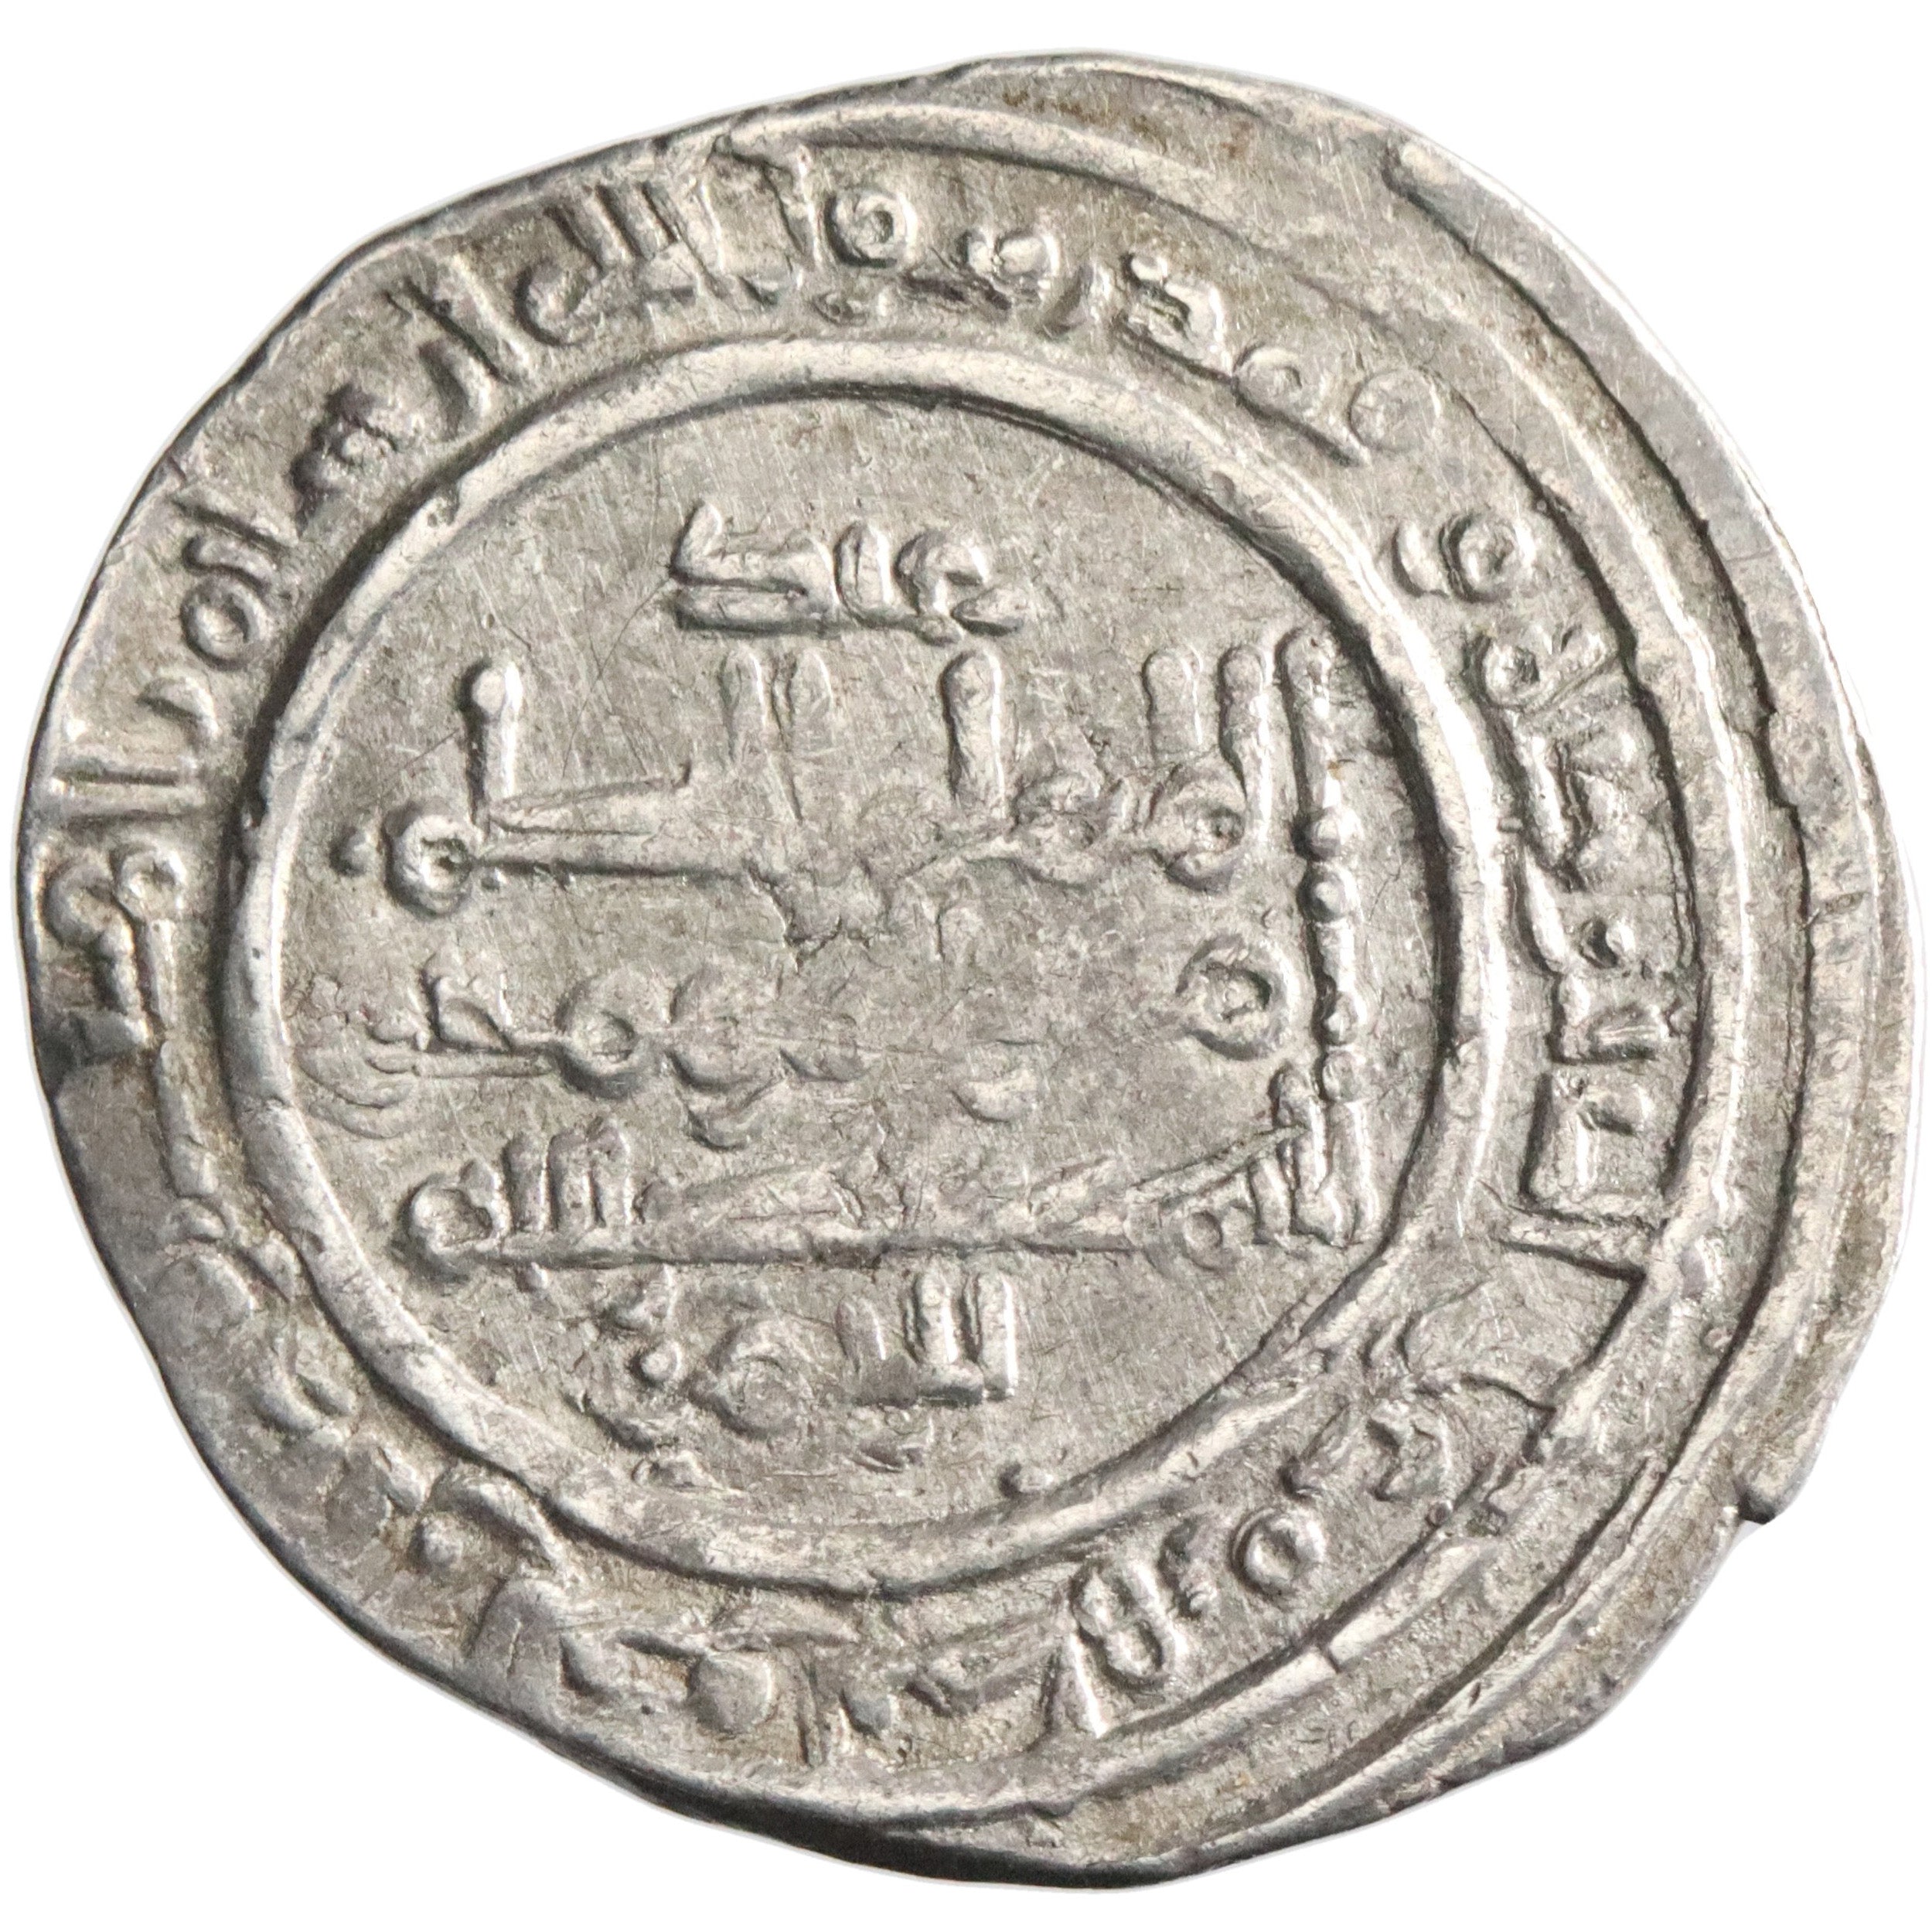 Umayyad of Spain, al-Hakam II, silver dirham, Madinat al-Zahra mint, AH 355, citing 'Abd al-Rahman